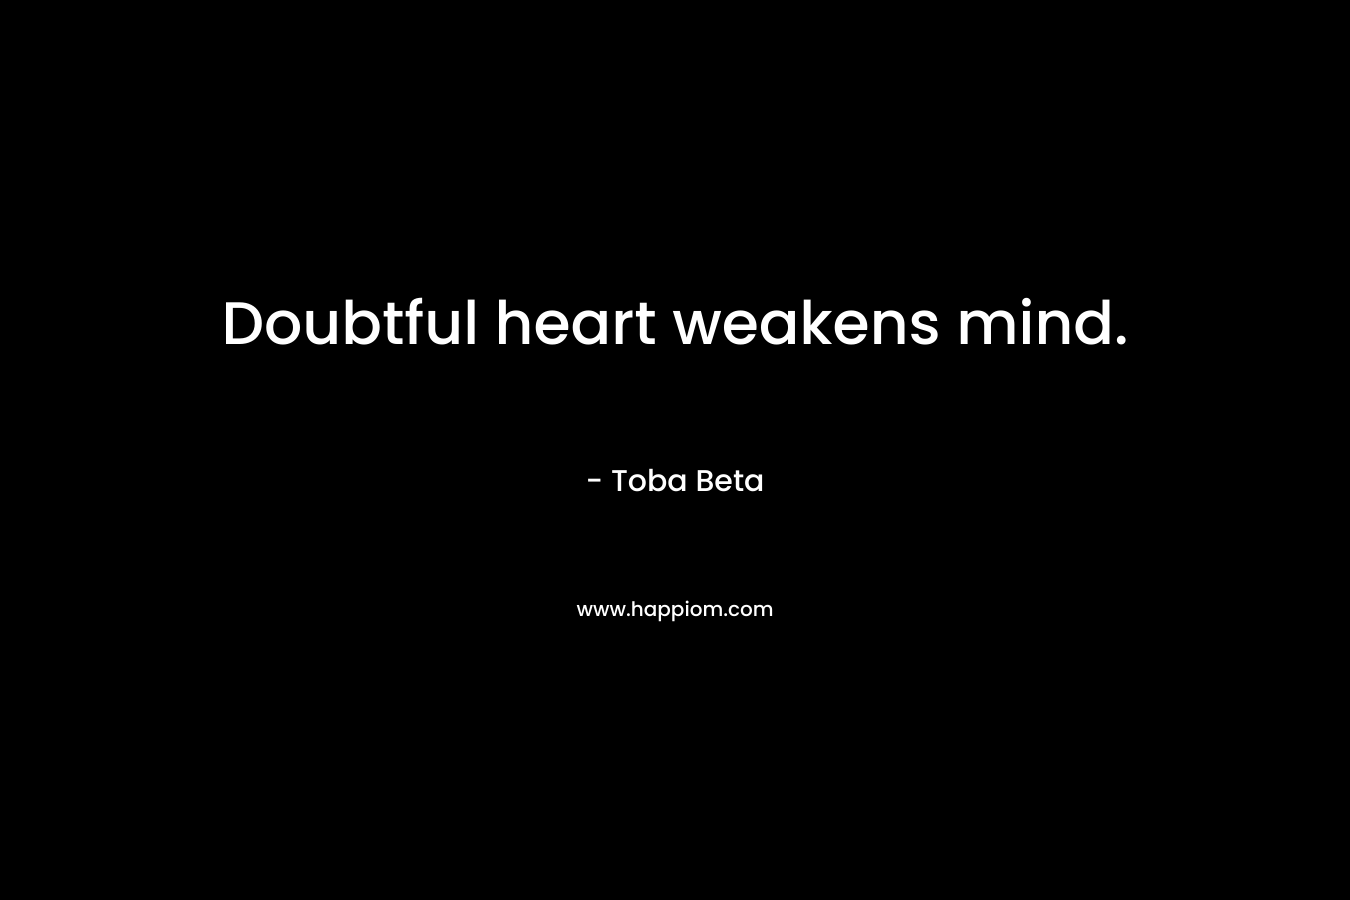 Doubtful heart weakens mind.